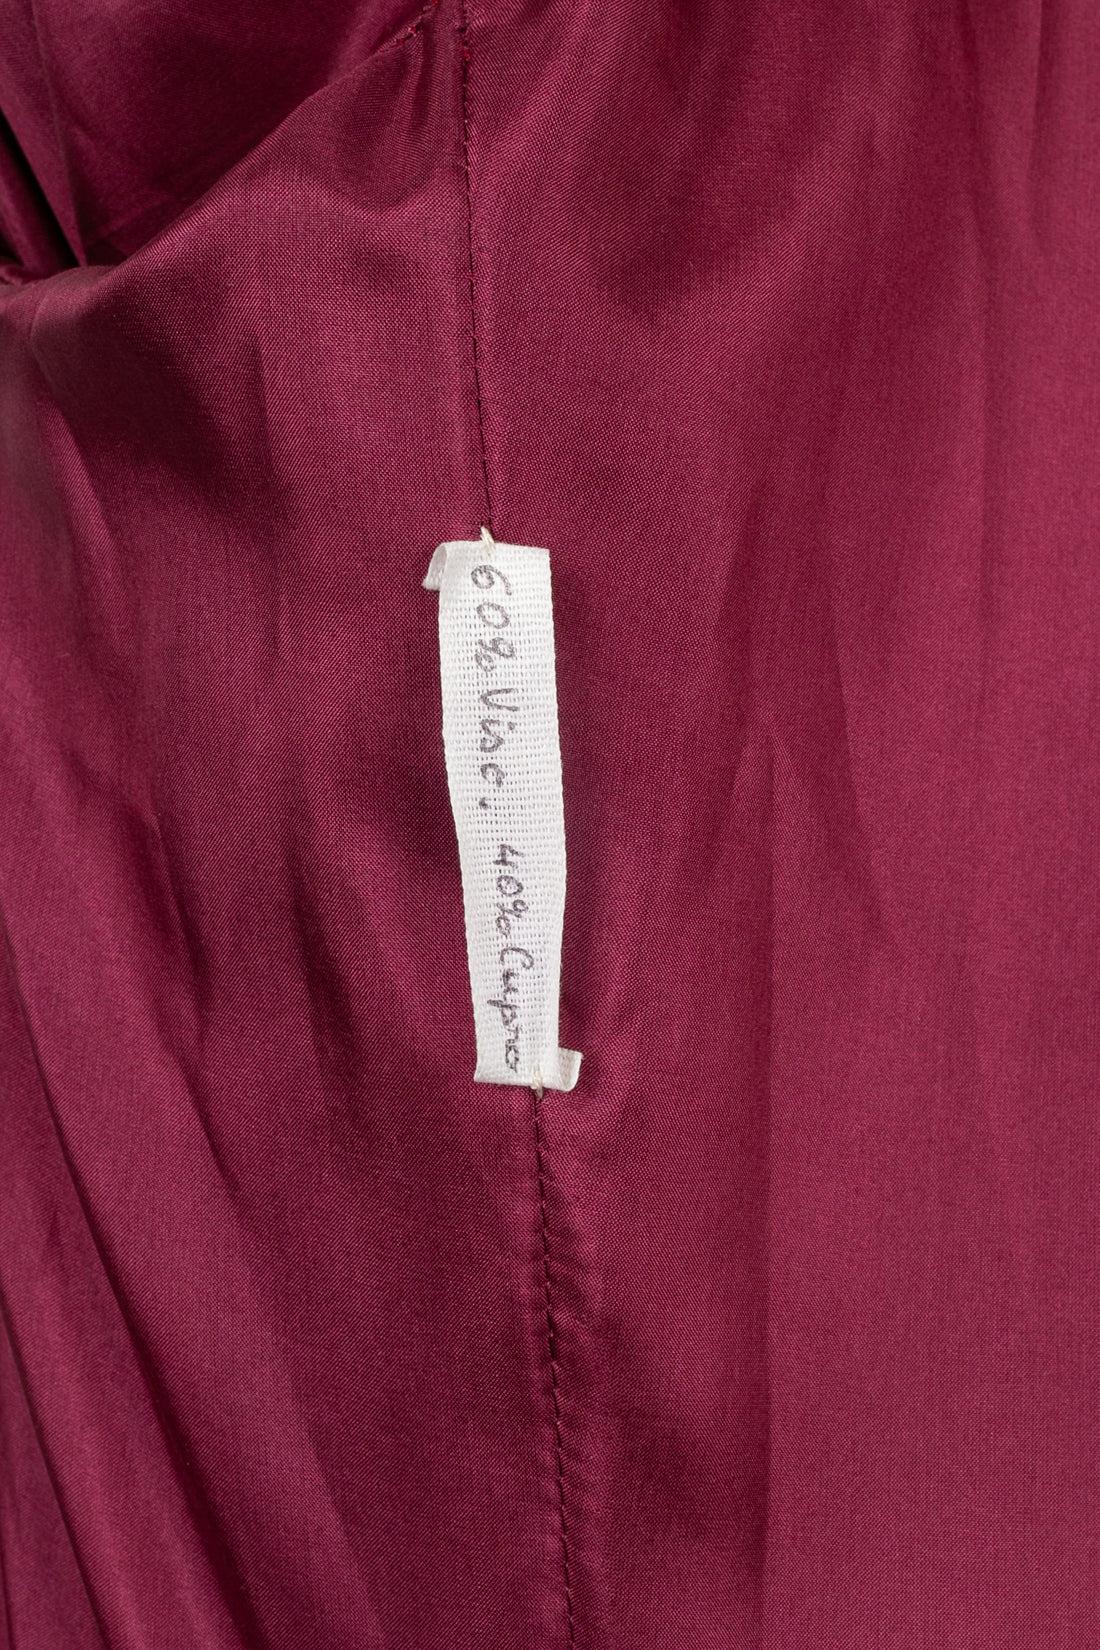 Christian Lacroix Coat Haute Couture, 1988/89 For Sale 8